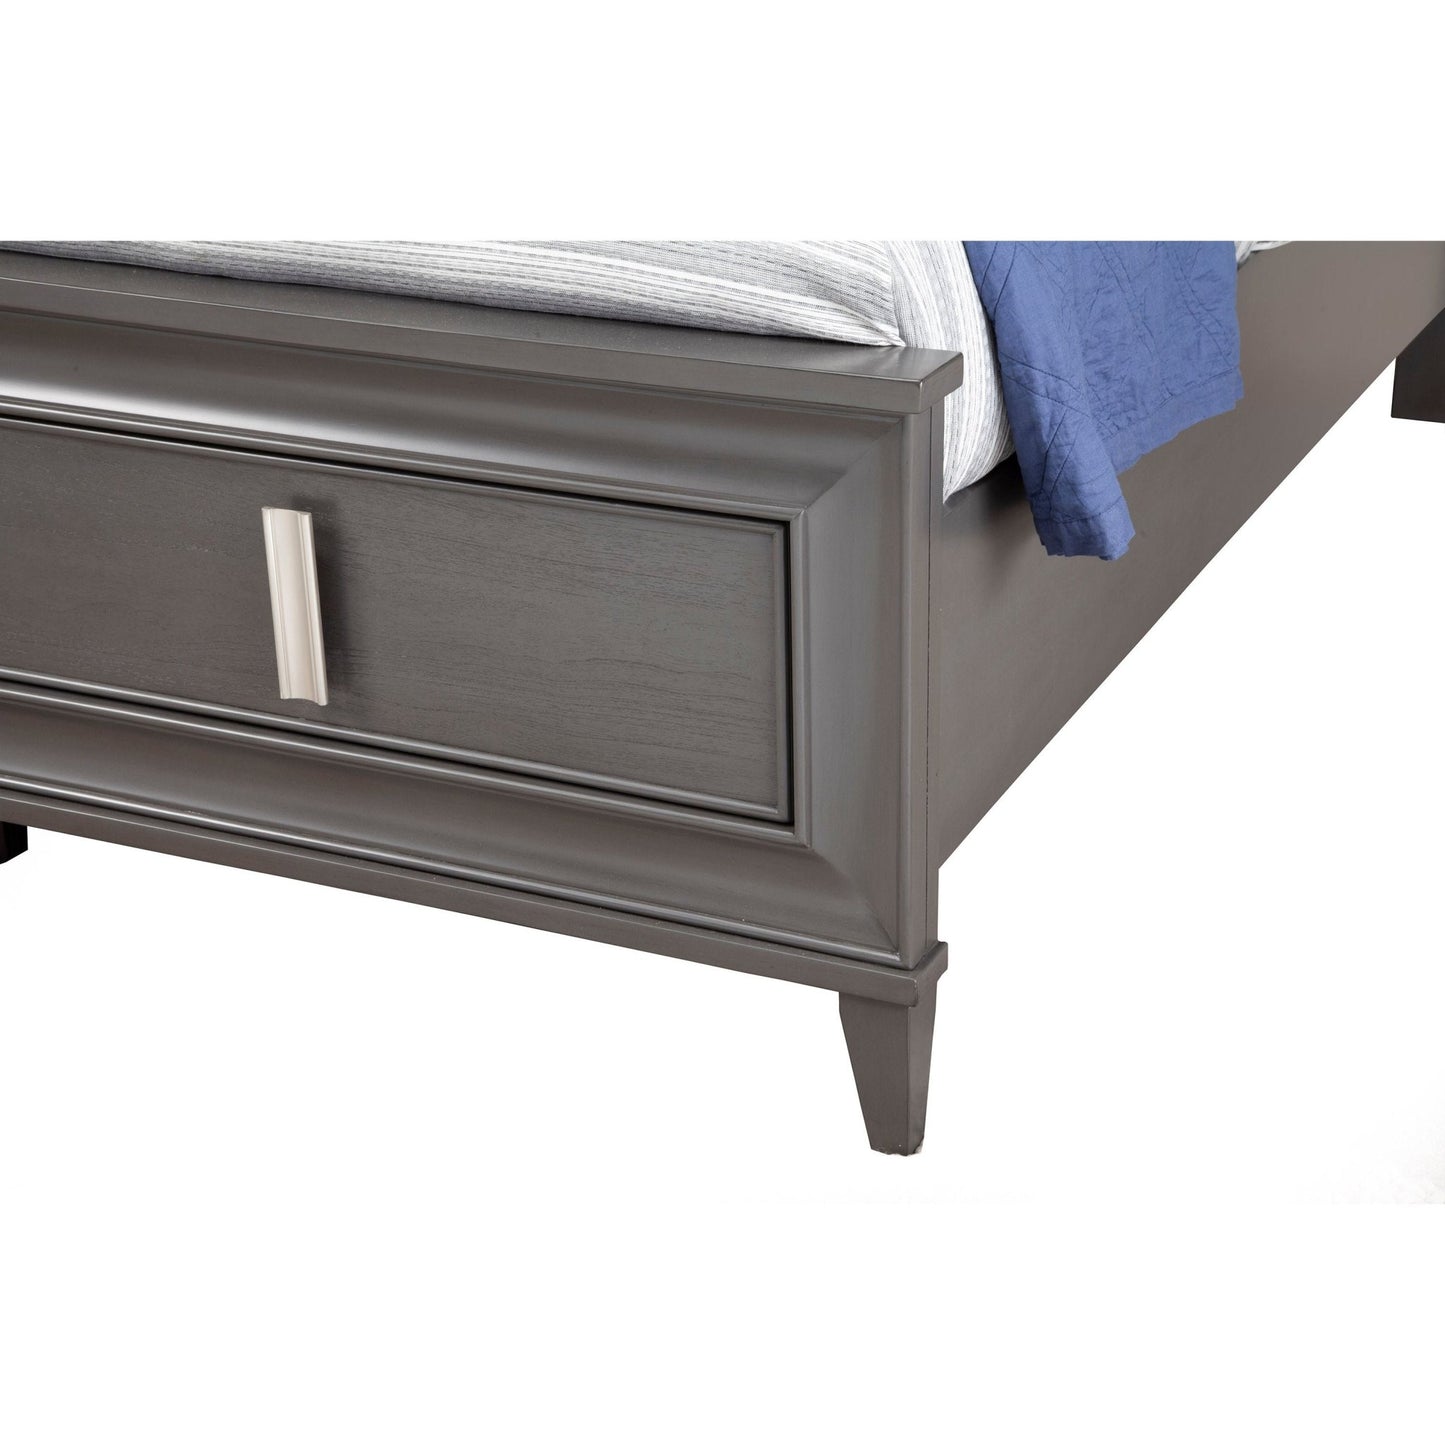 Lorraine Storage Bed, Dark Grey - Alpine Furniture